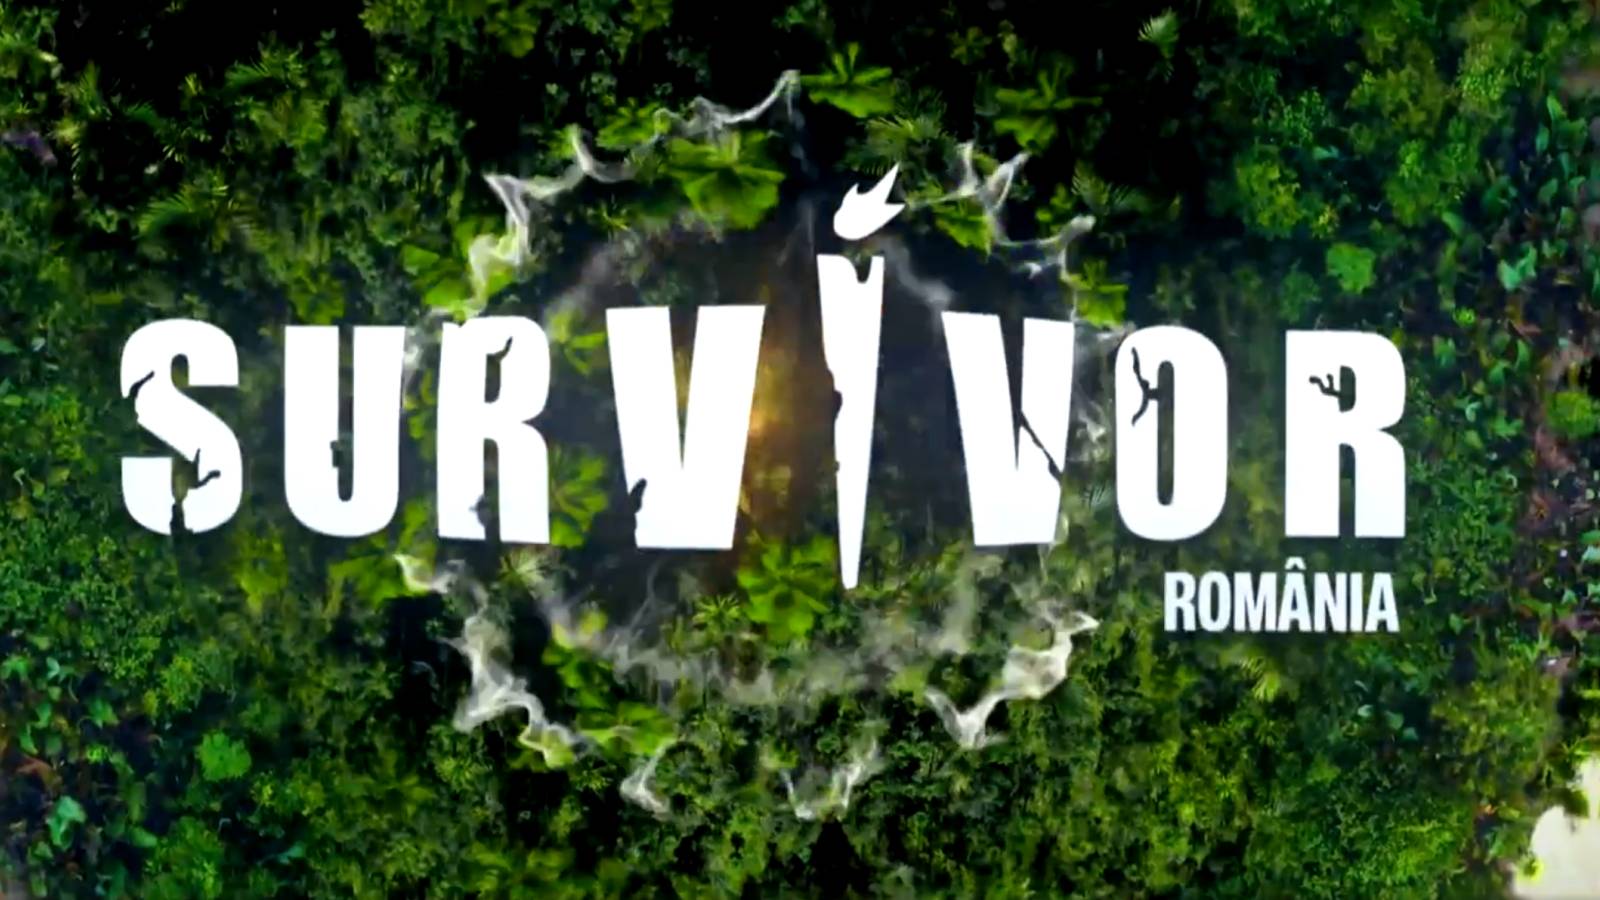 Survivor All Stars Överraskande premiär SENASTE GÅNGEN Tillkännagav PRO TV-program